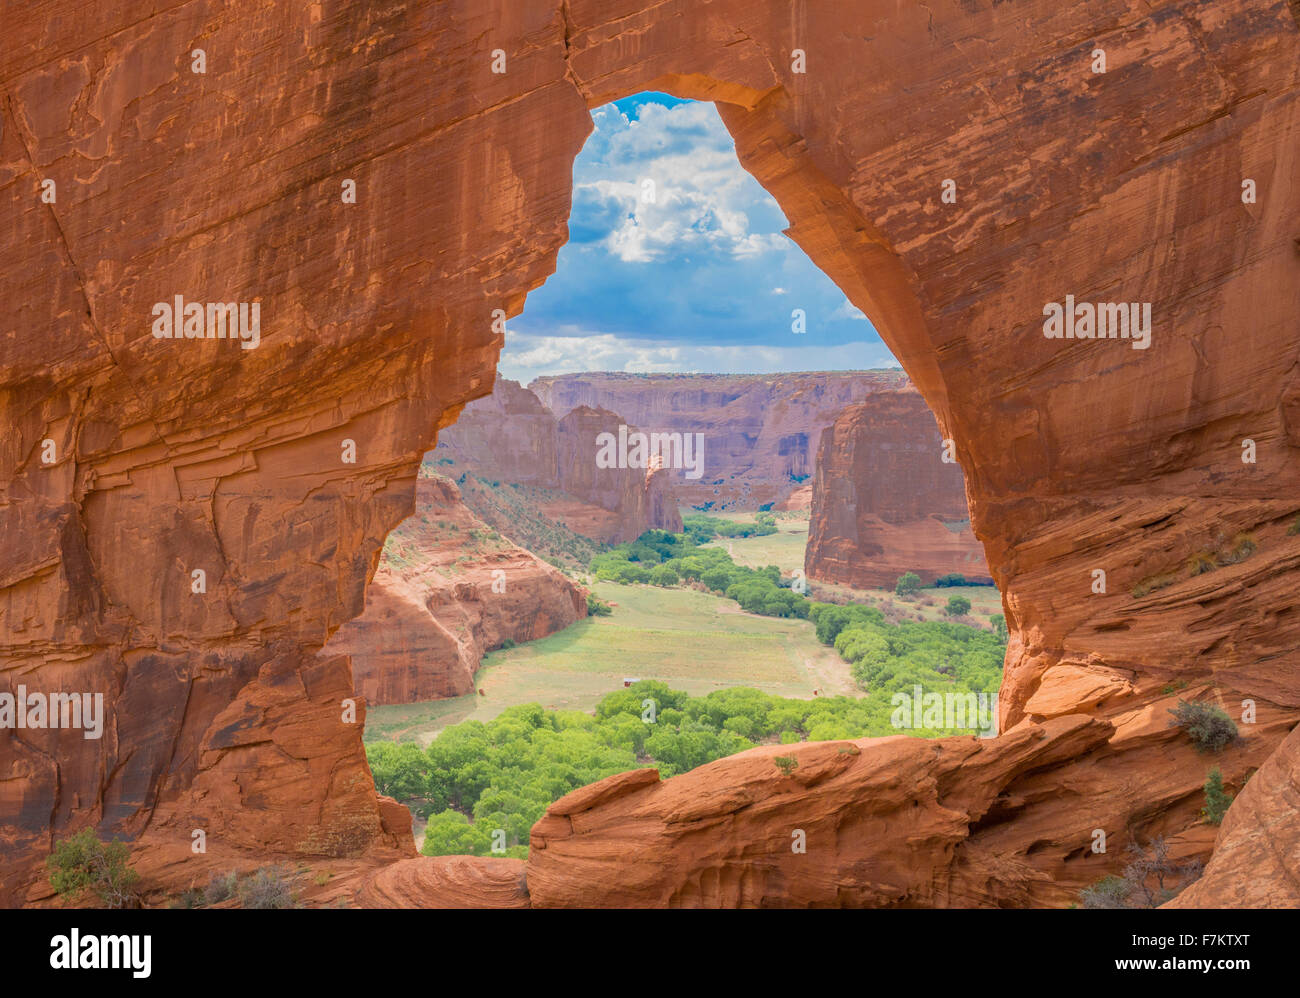 La fenêtre, Canyon de Chelly National Monument, Arizona, Grand canyon encadrement arche naturelle de grès Banque D'Images